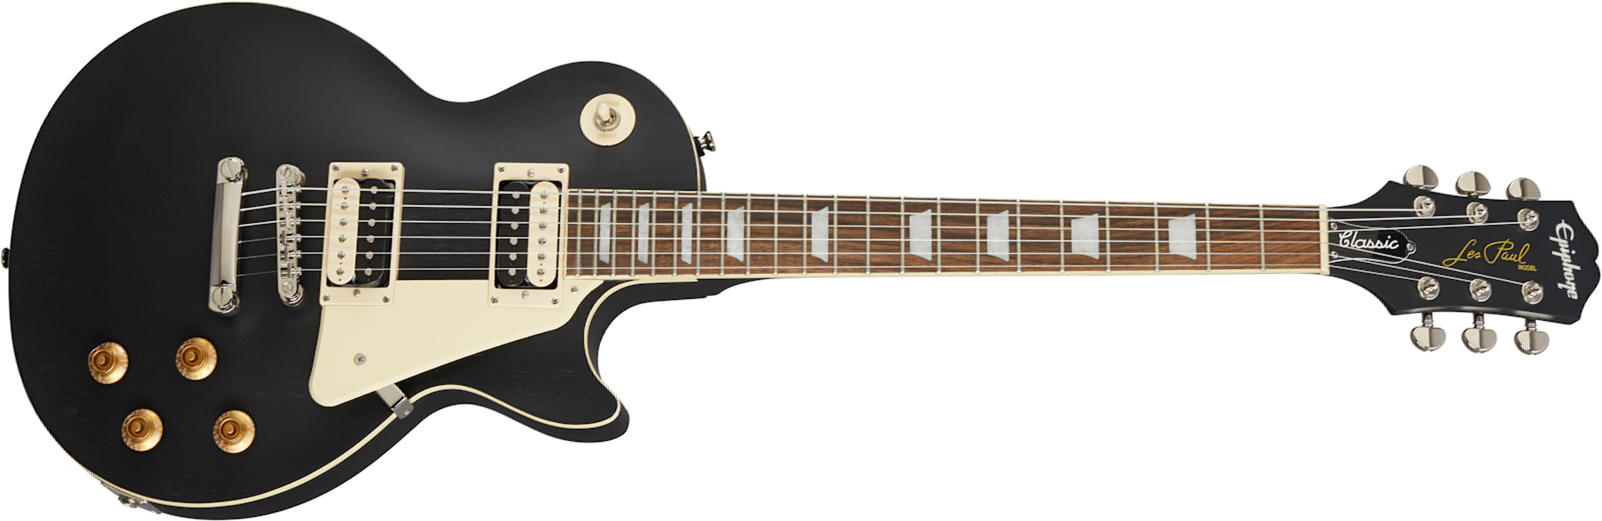 Epiphone Les Paul Classic Worn 2020 Hh Ht Lau - Worn Ebony - Single cut electric guitar - Main picture